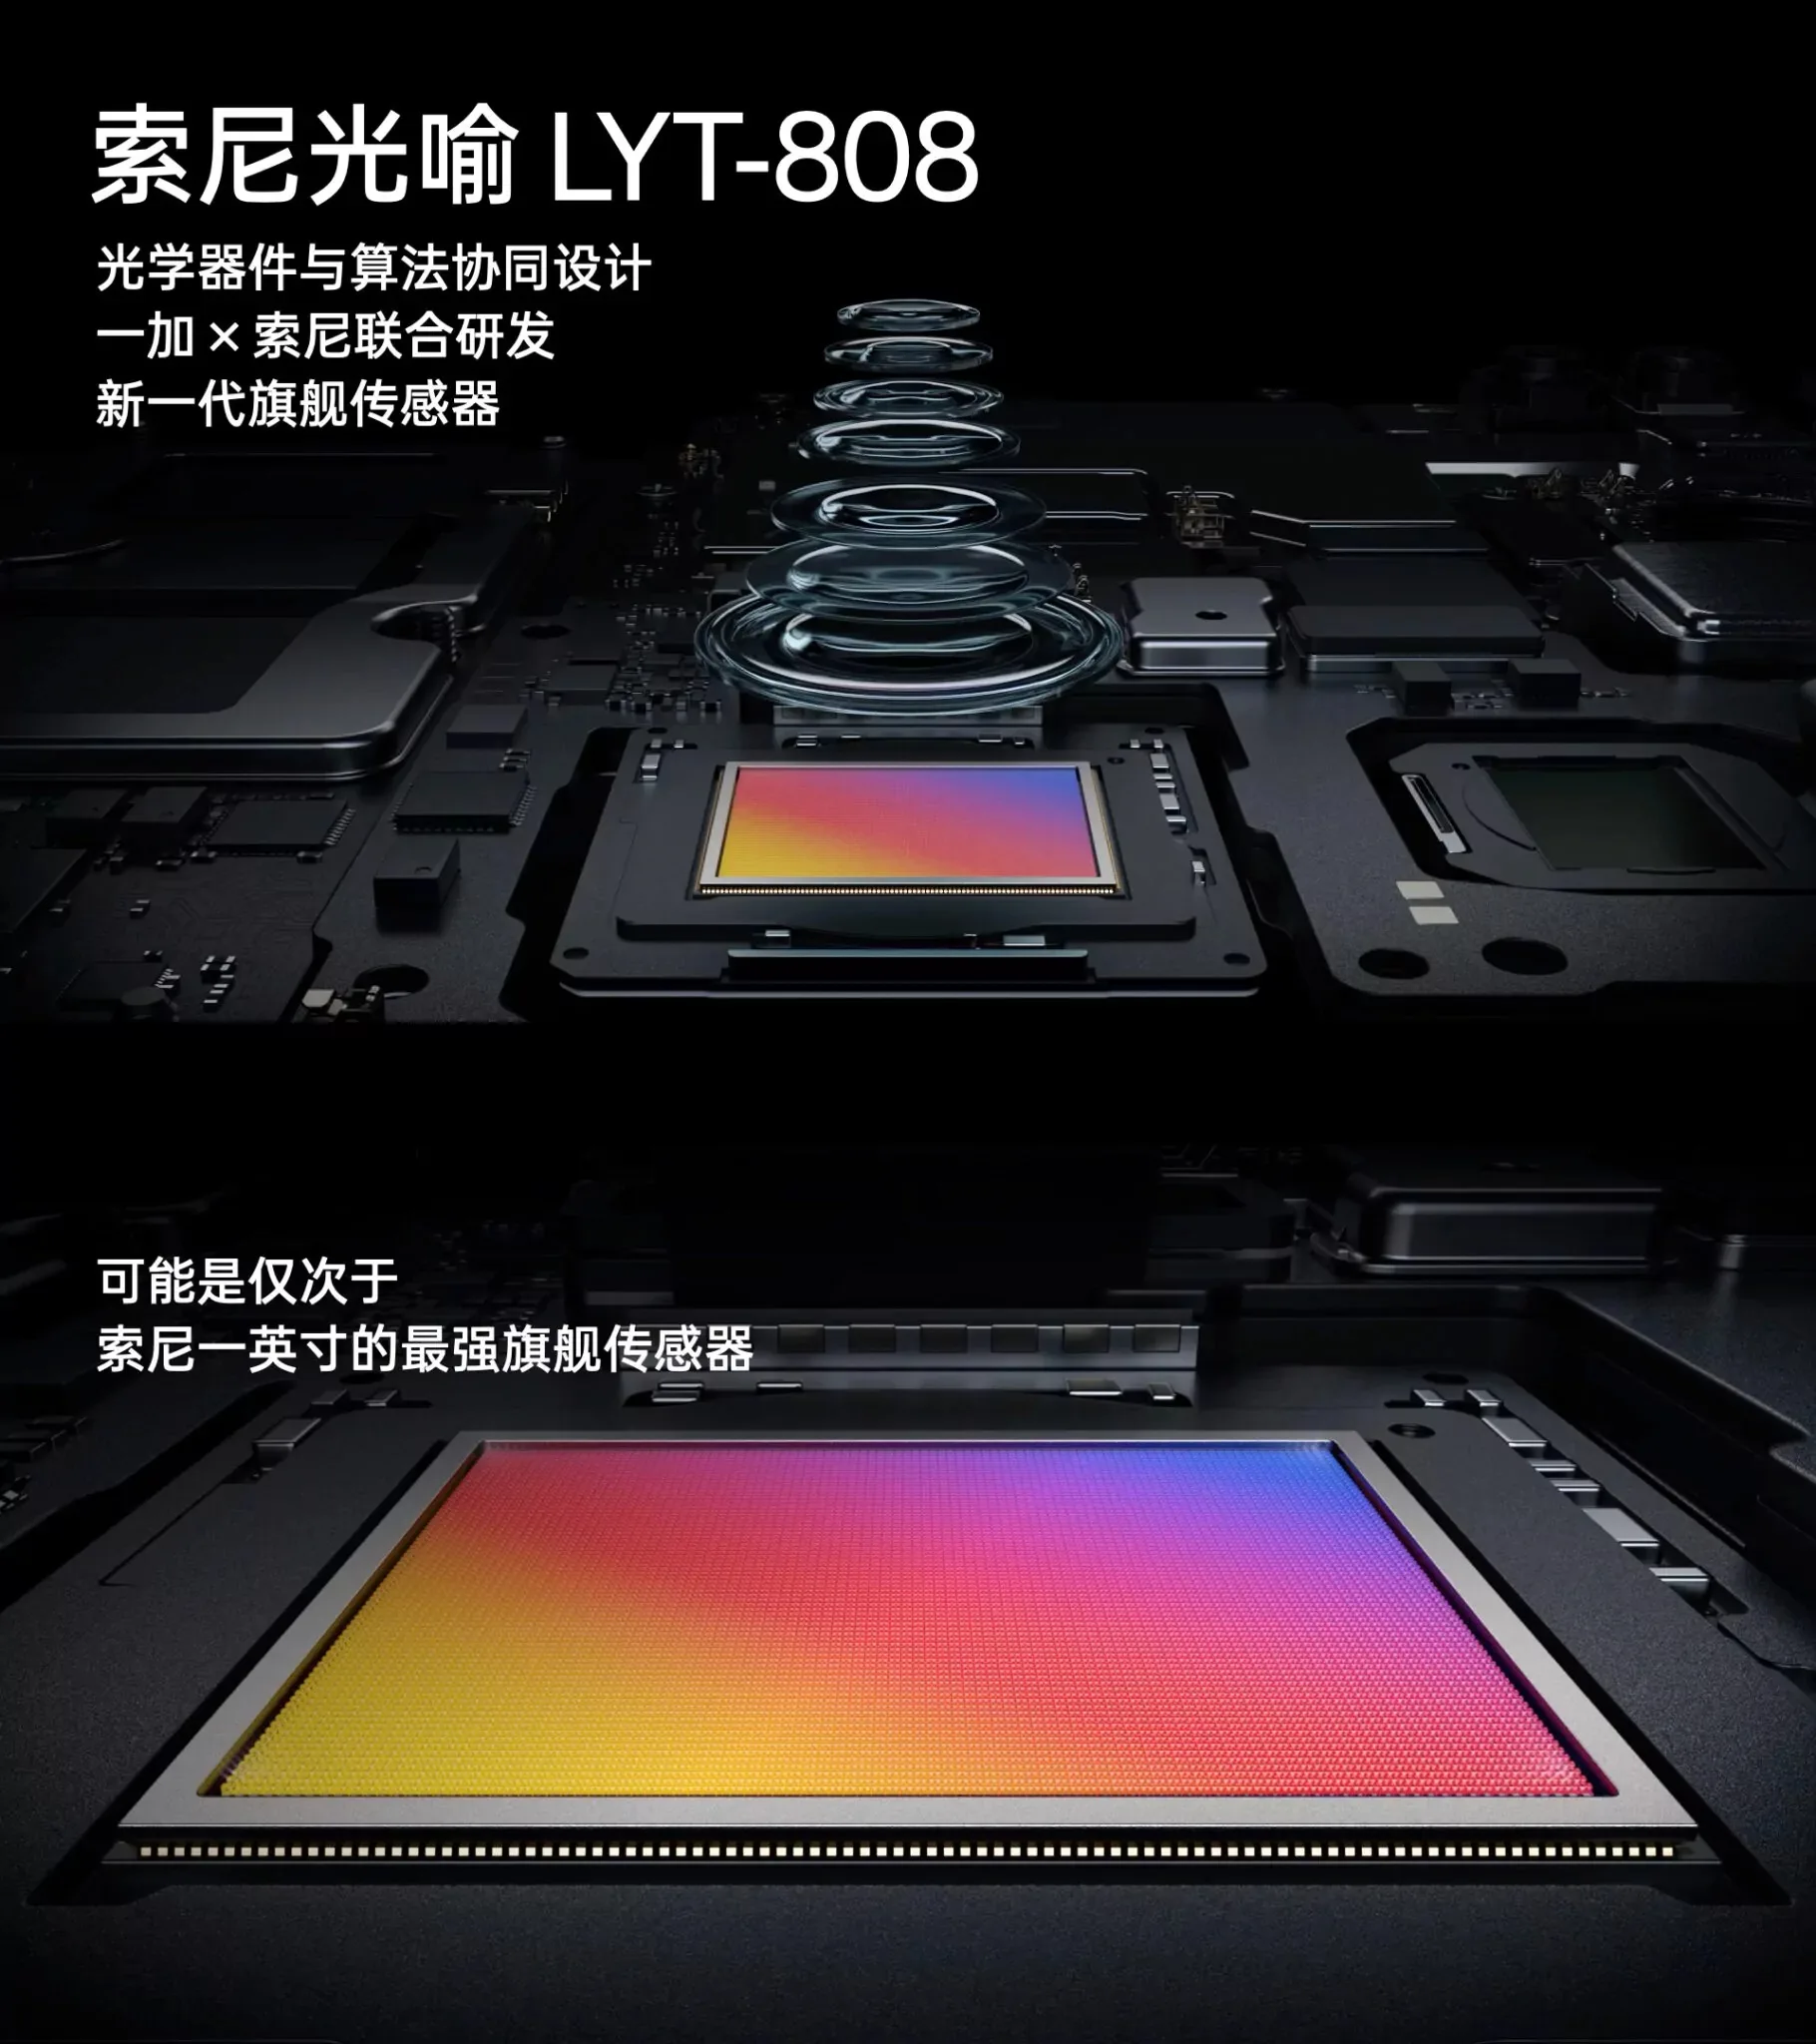 Sony Lytia LYT 808 on the OnePlu jpg